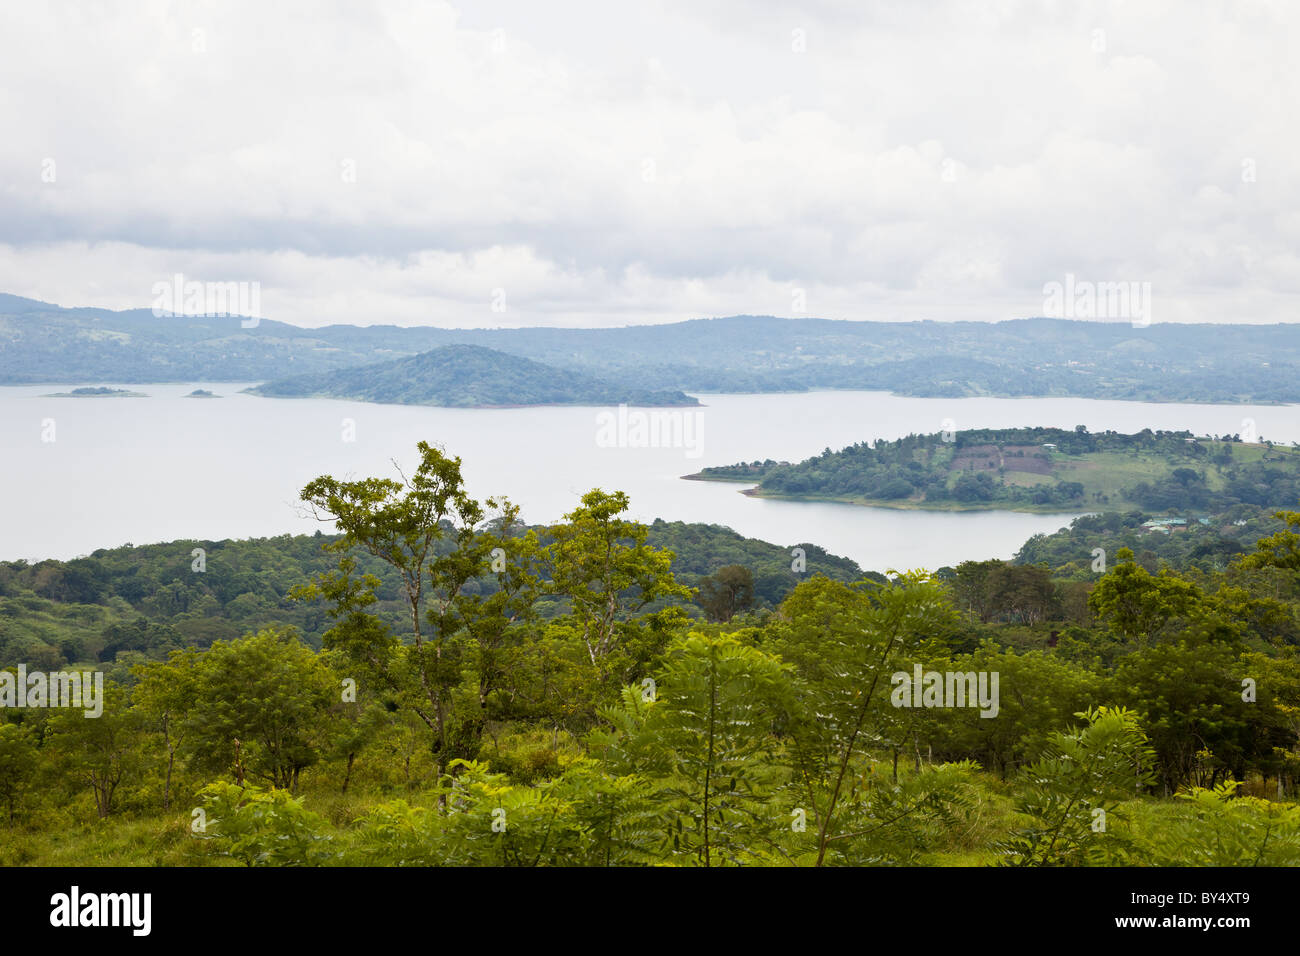 Forêt luxuriante entourant le Lac Arenal, un lac artificiel formé afin de fournir de l'hydroélectricité au Costa Rica. Banque D'Images